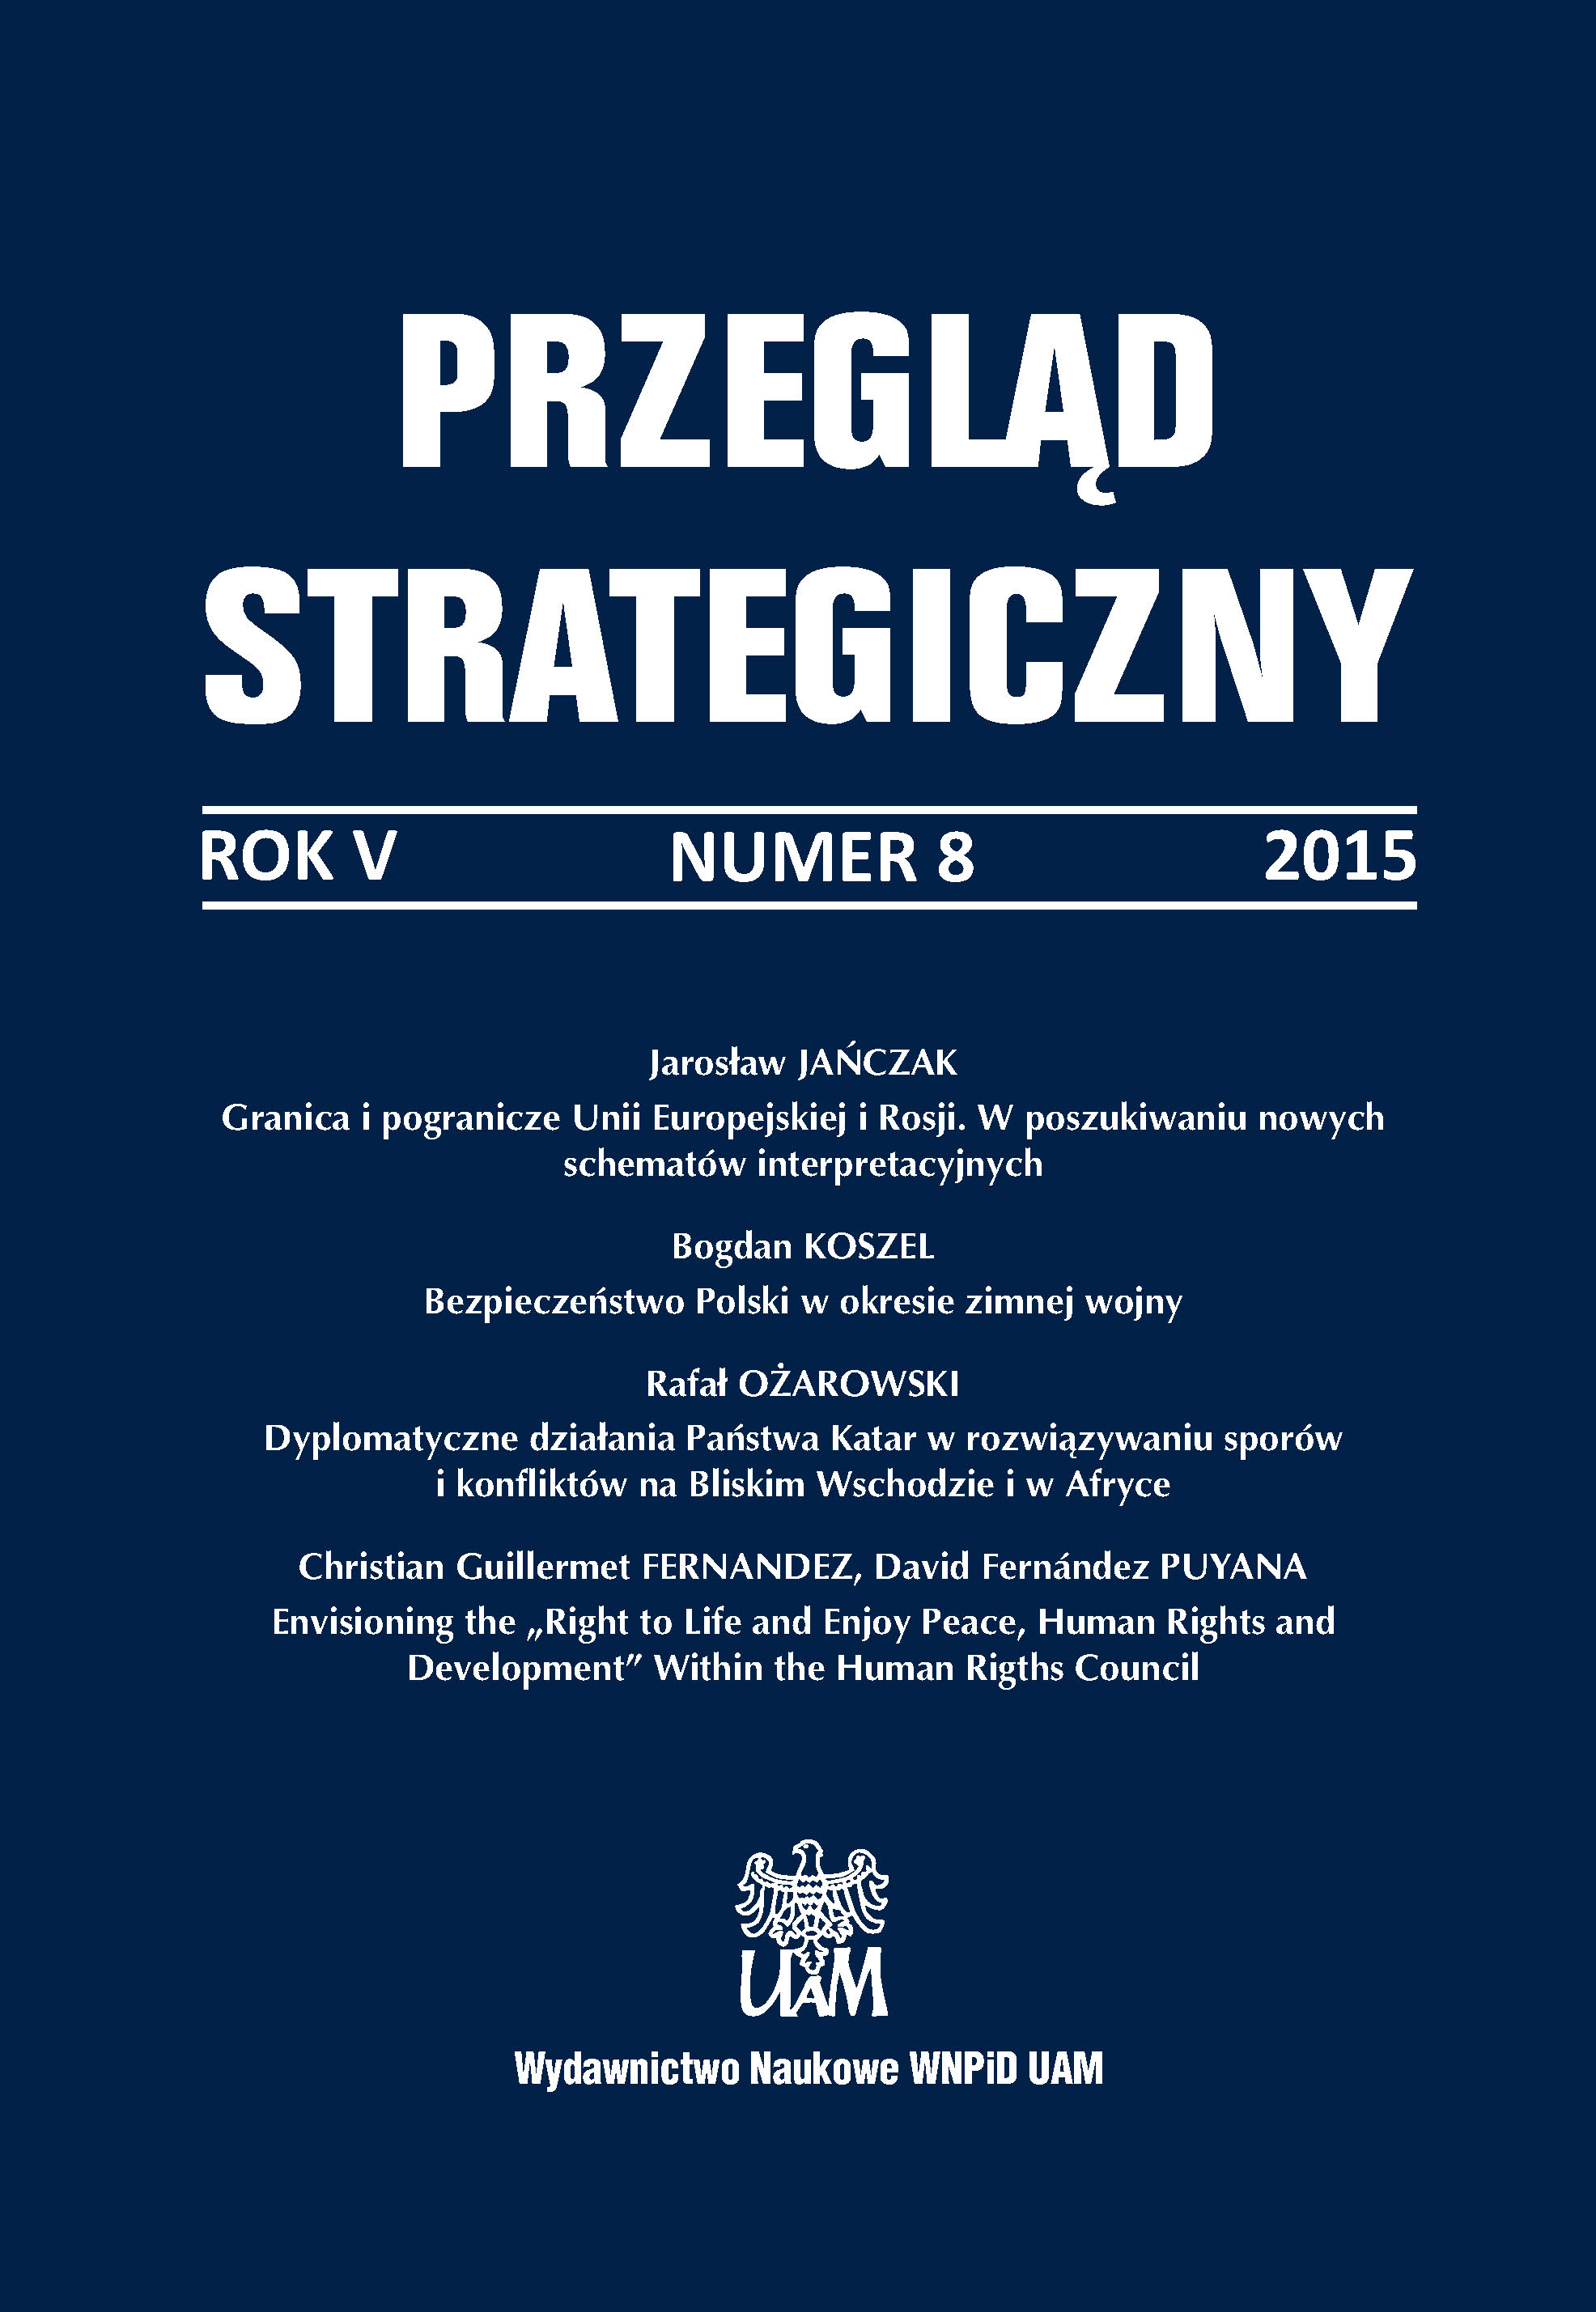 Bezpieczeństwo Polski. Współczesne wyzwania, red. Sebastian Wojciechowski, Anna Potyrała, Difin,Warszawa 2014, ss. 262.